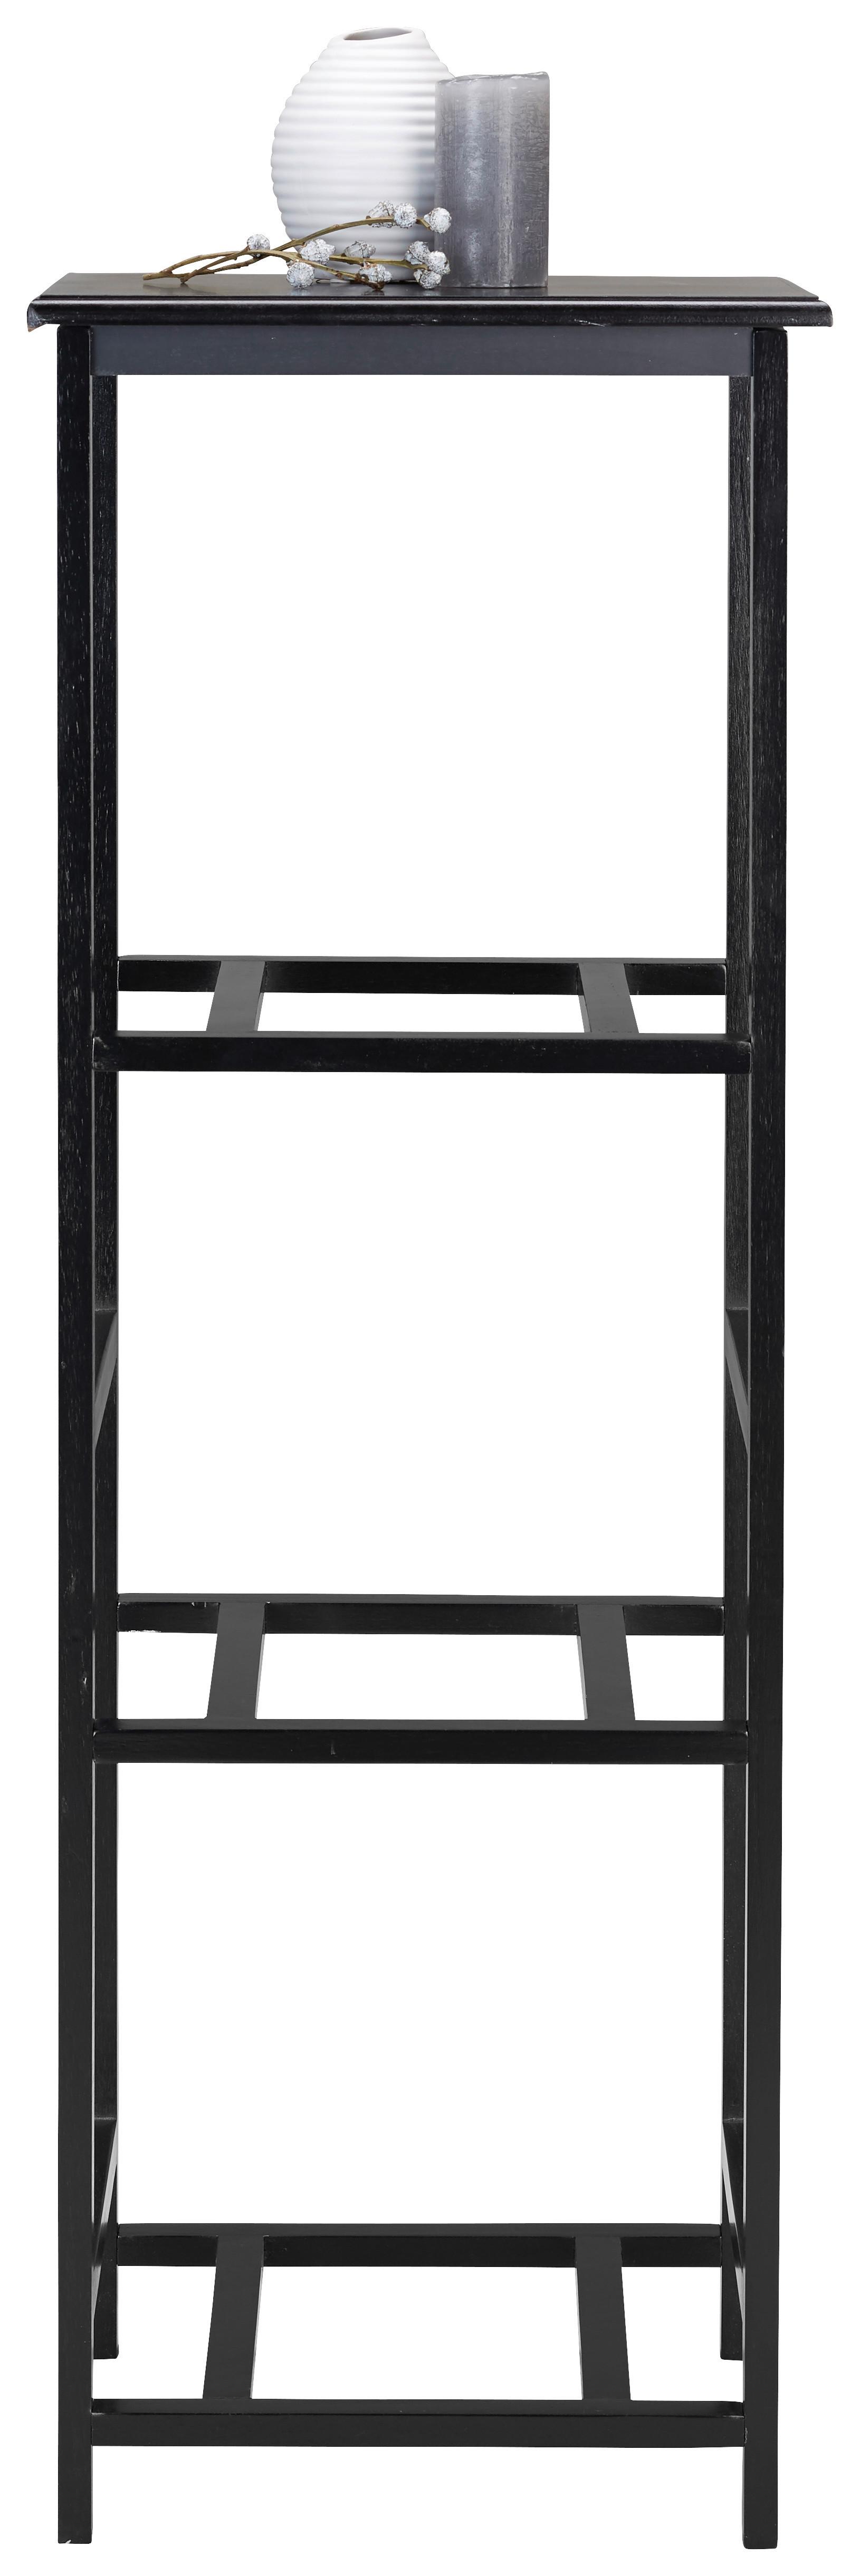 Regal Nino -Tz/exklusiv- - črna, Moderno, leseni material/les (37/104/32cm) - Trajno Znizanje